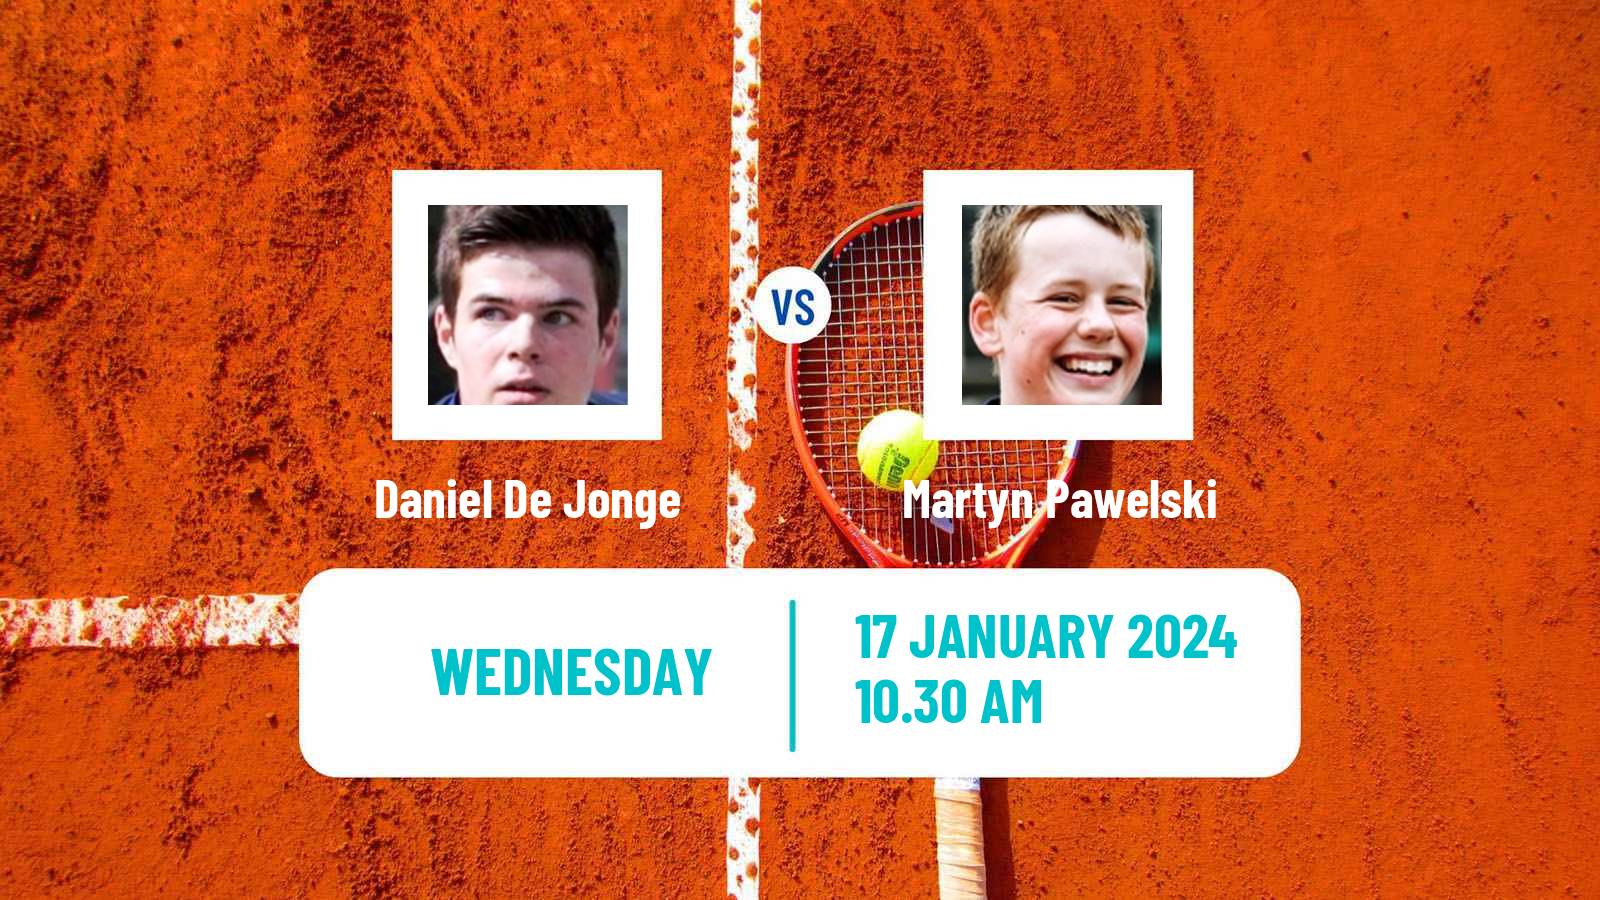 Tennis ITF M15 Bressuire Men Daniel De Jonge - Martyn Pawelski